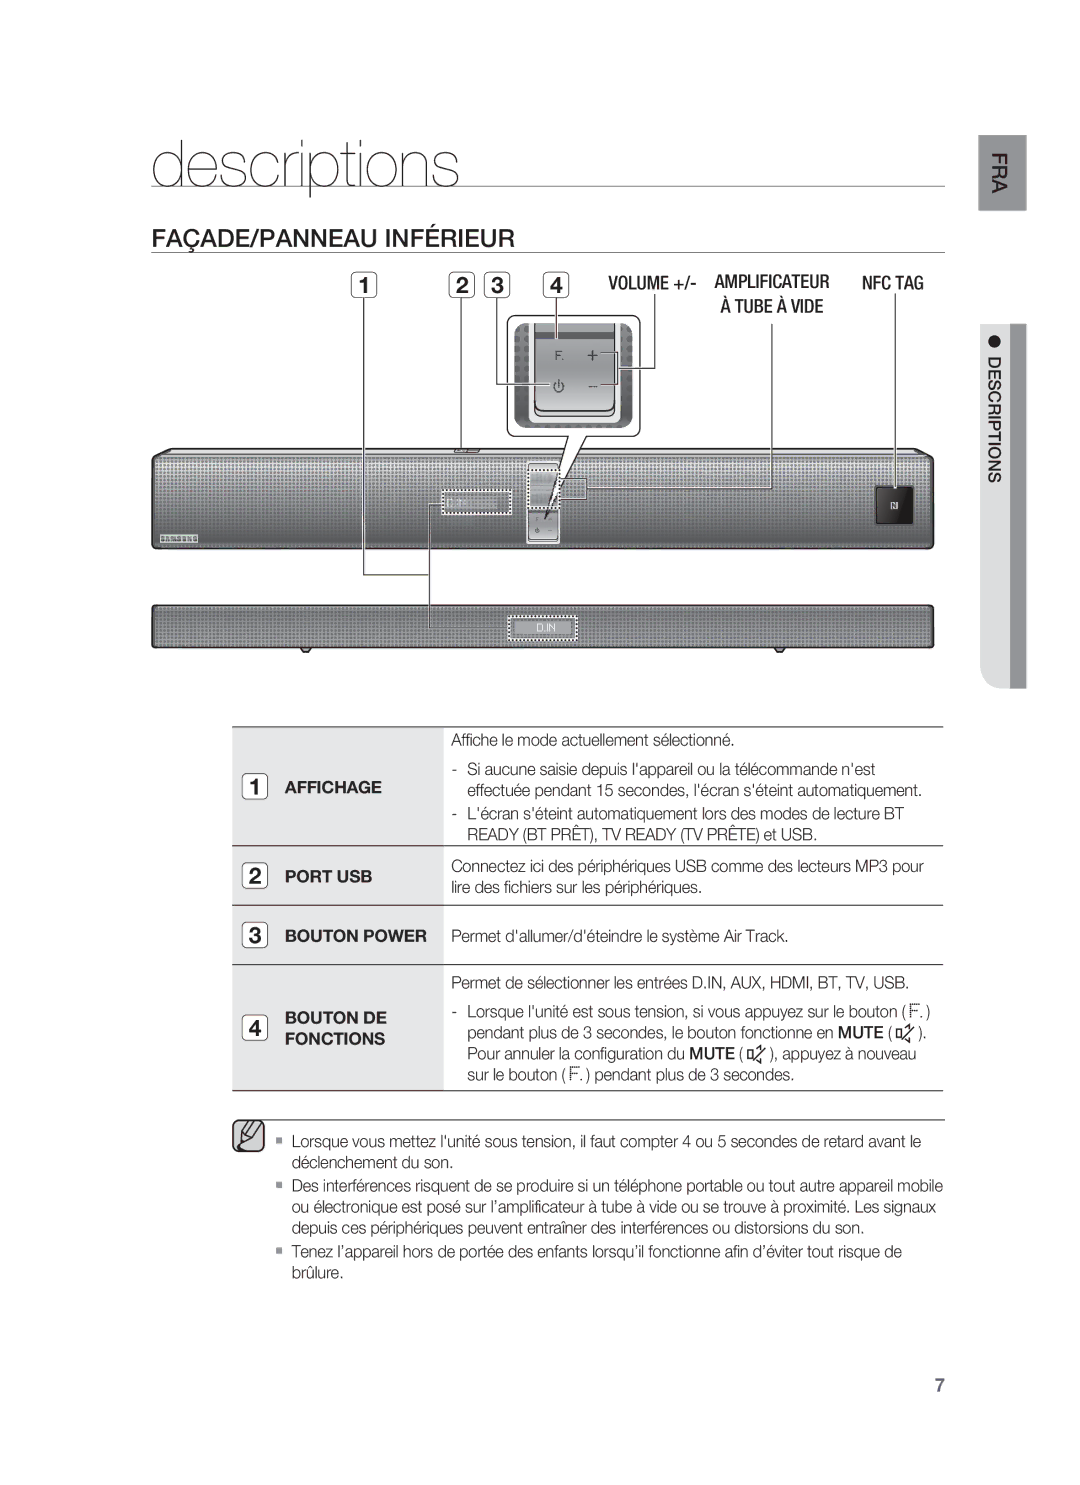 Samsung HW-F850/ZF manual Descriptions, FAÇADE/PANNEAU Inférieur 